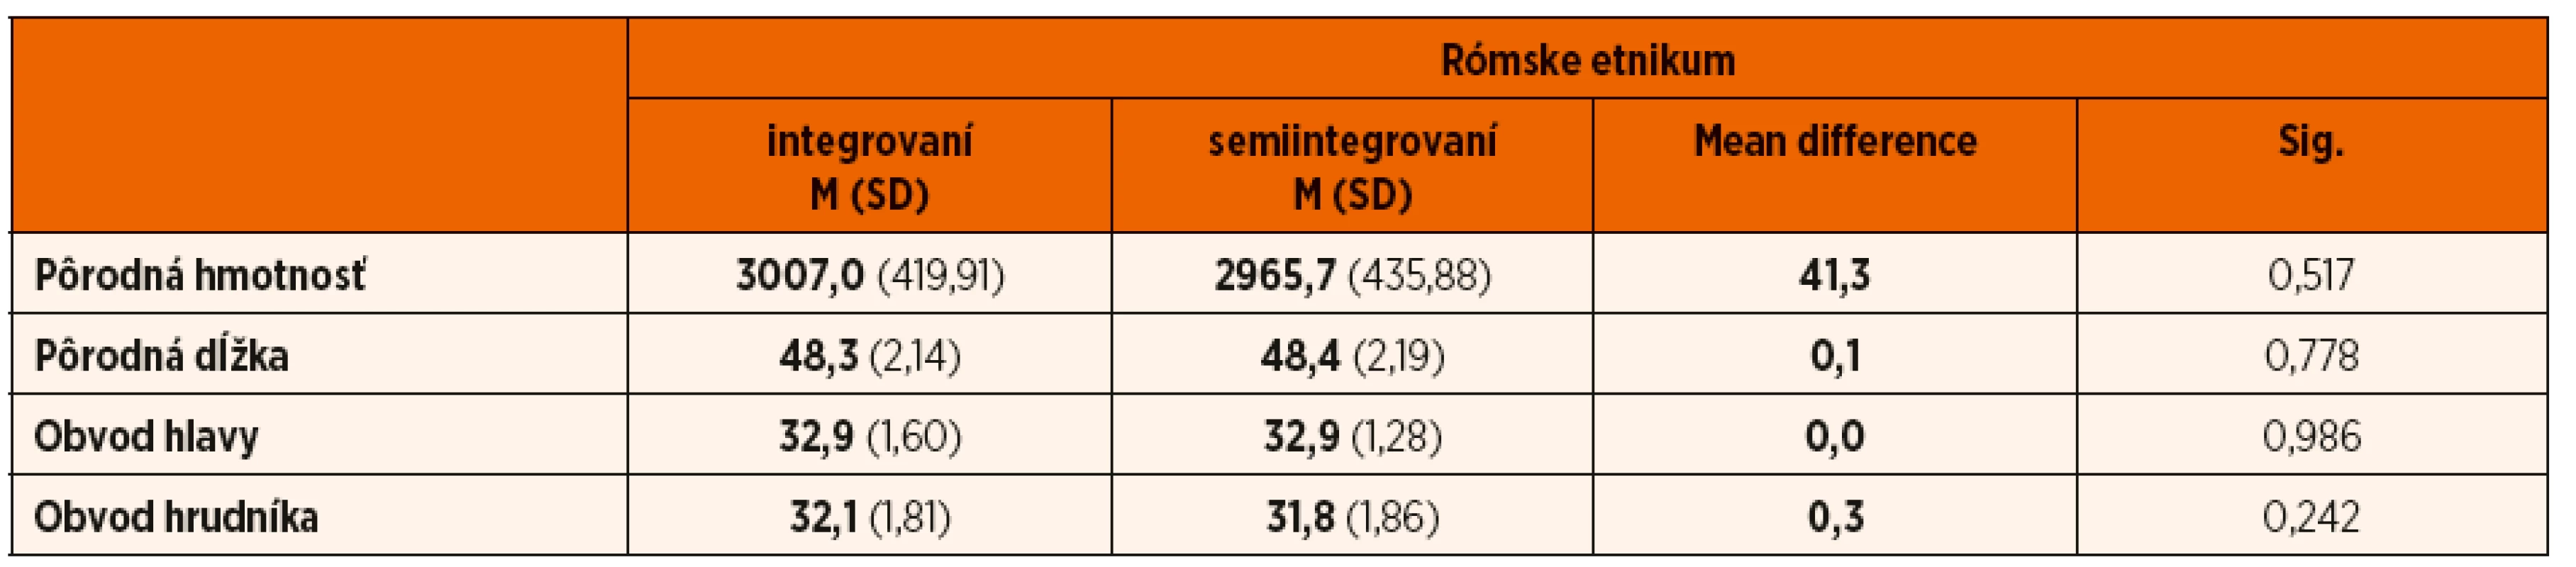 Komparácia antropometrických parametrov u novorodencov rómskeho etnika – integrovaných a semiintegrovaných.